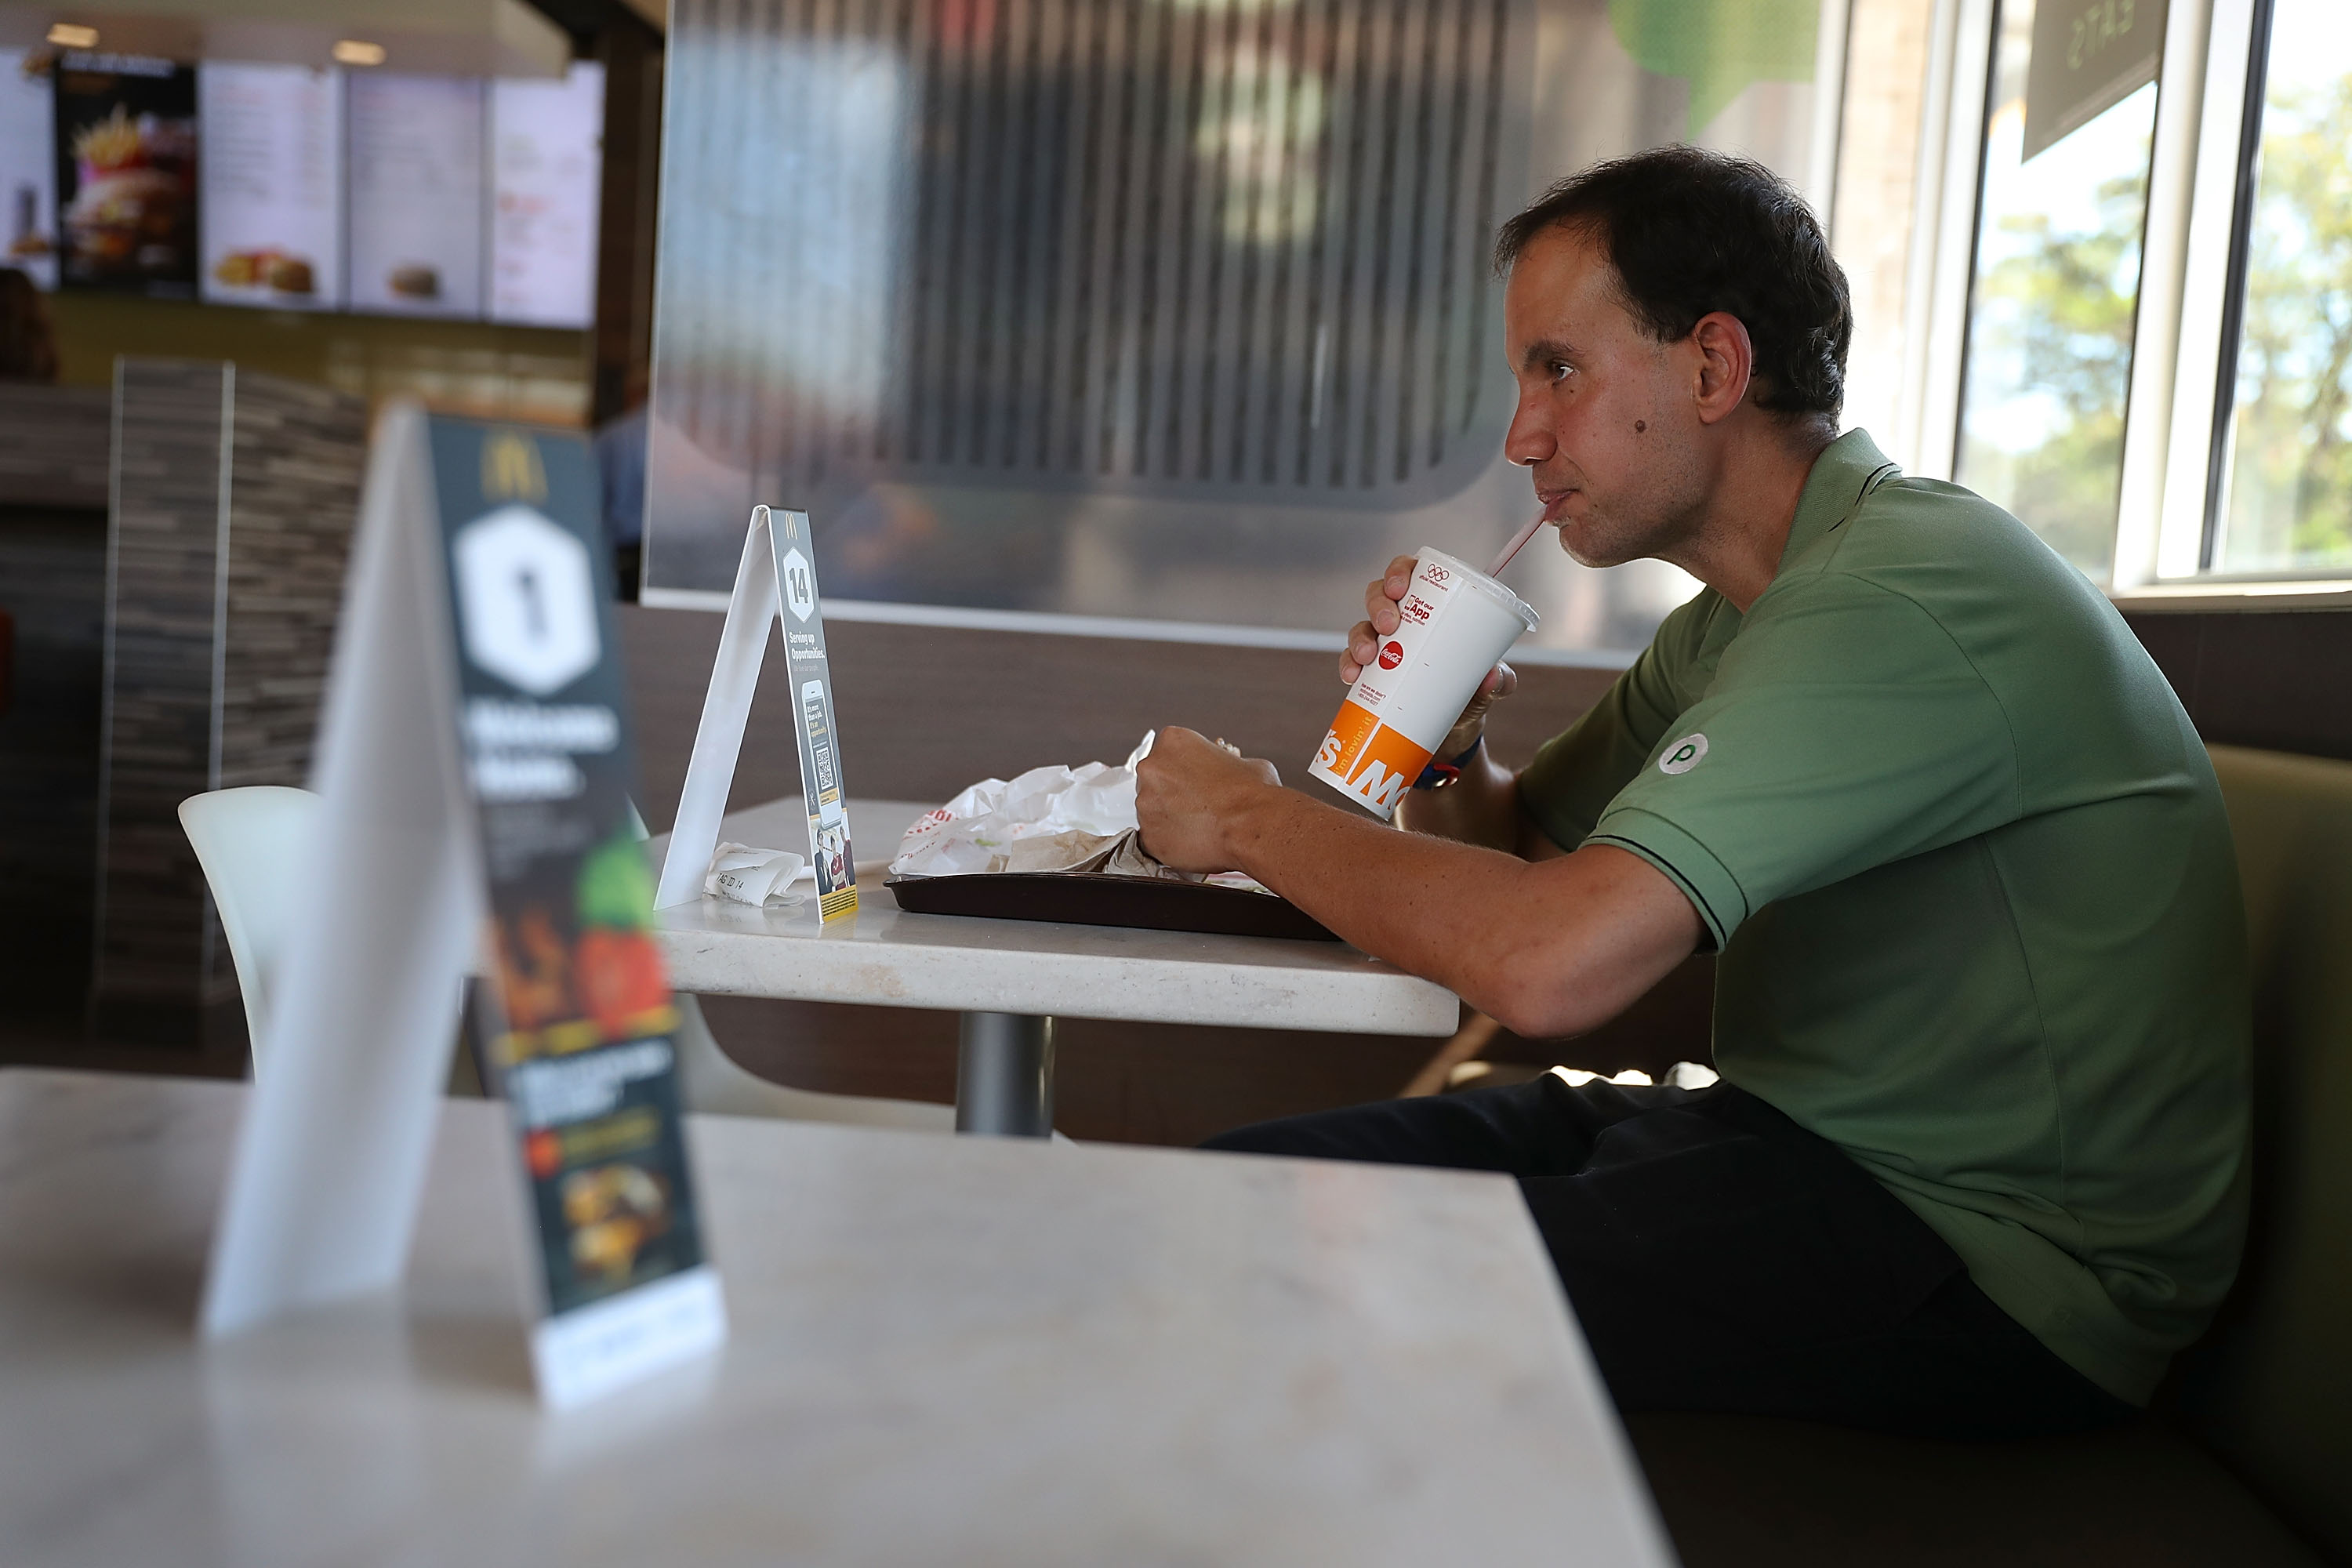 Ein Fisch-Burger als Erinnerung an toten Vater: McDonald’s zieht Werbung nach scharfer Kritik zurück